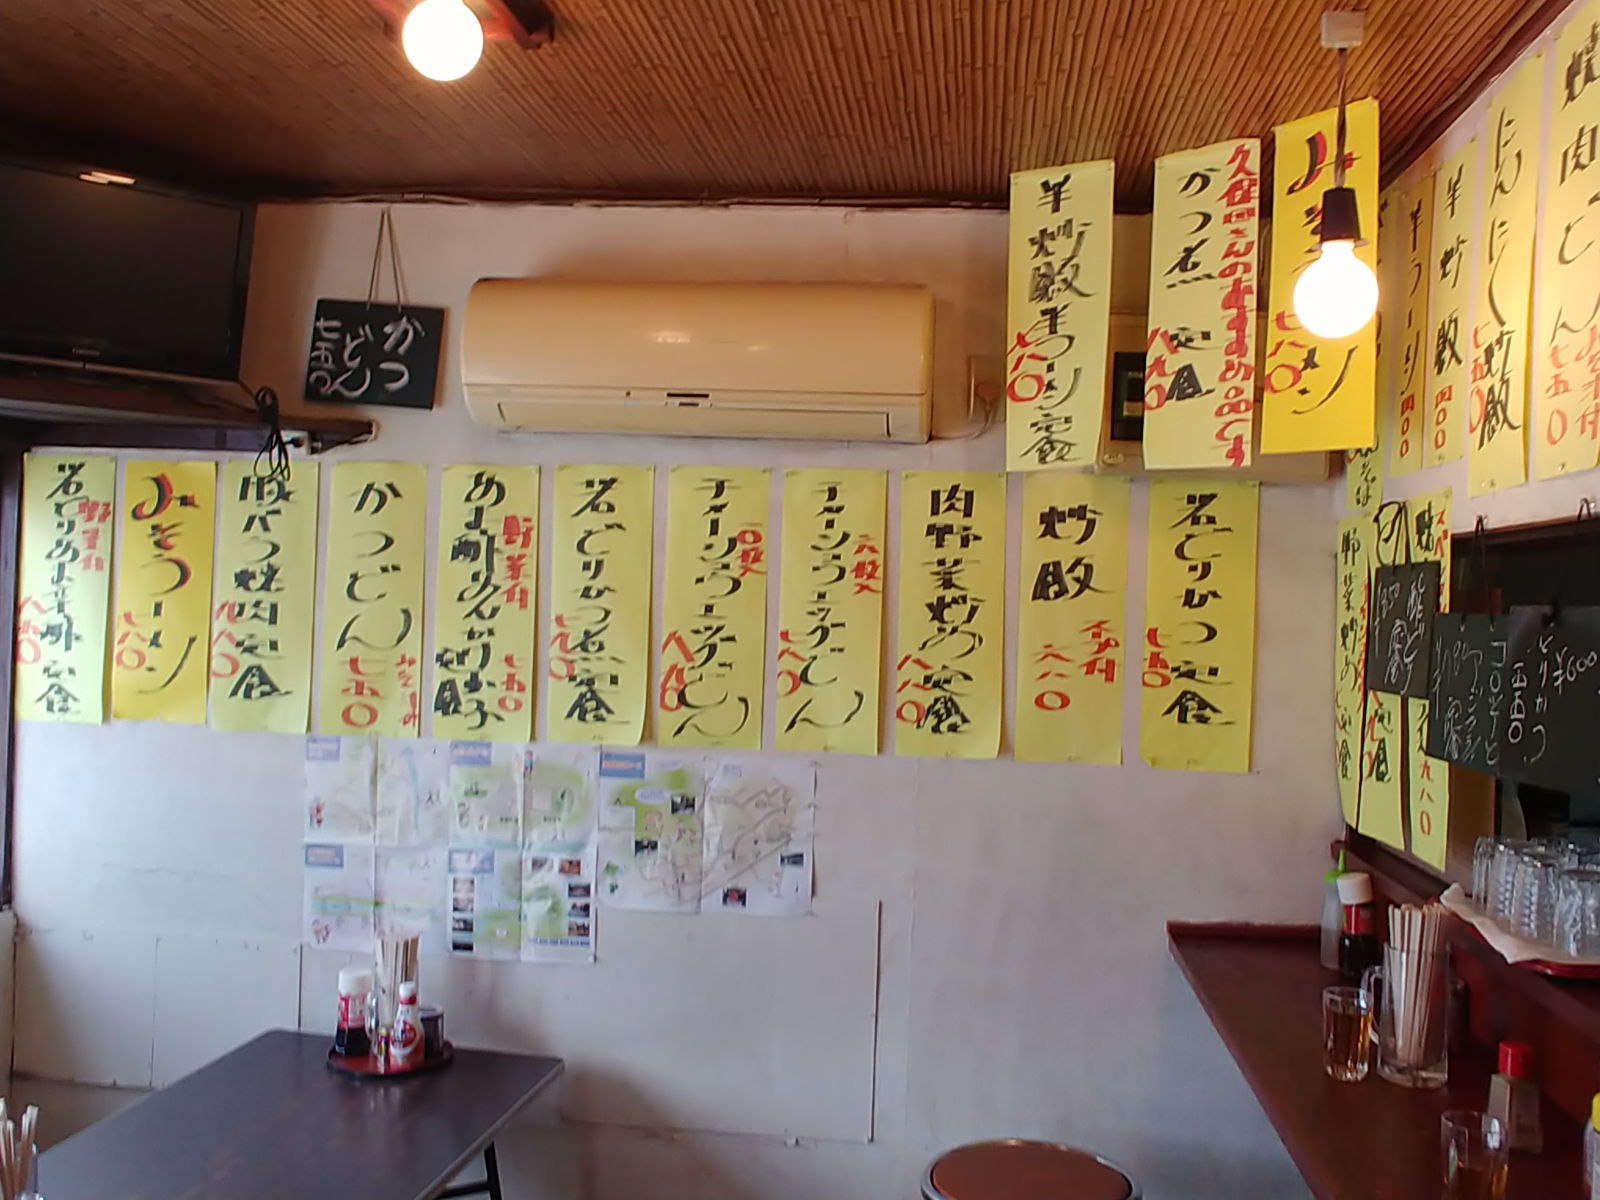 秋山食堂　黒にんにく炒飯と半ラーメン （サラダ付き）　＠長野市超大盛りランチグルメ